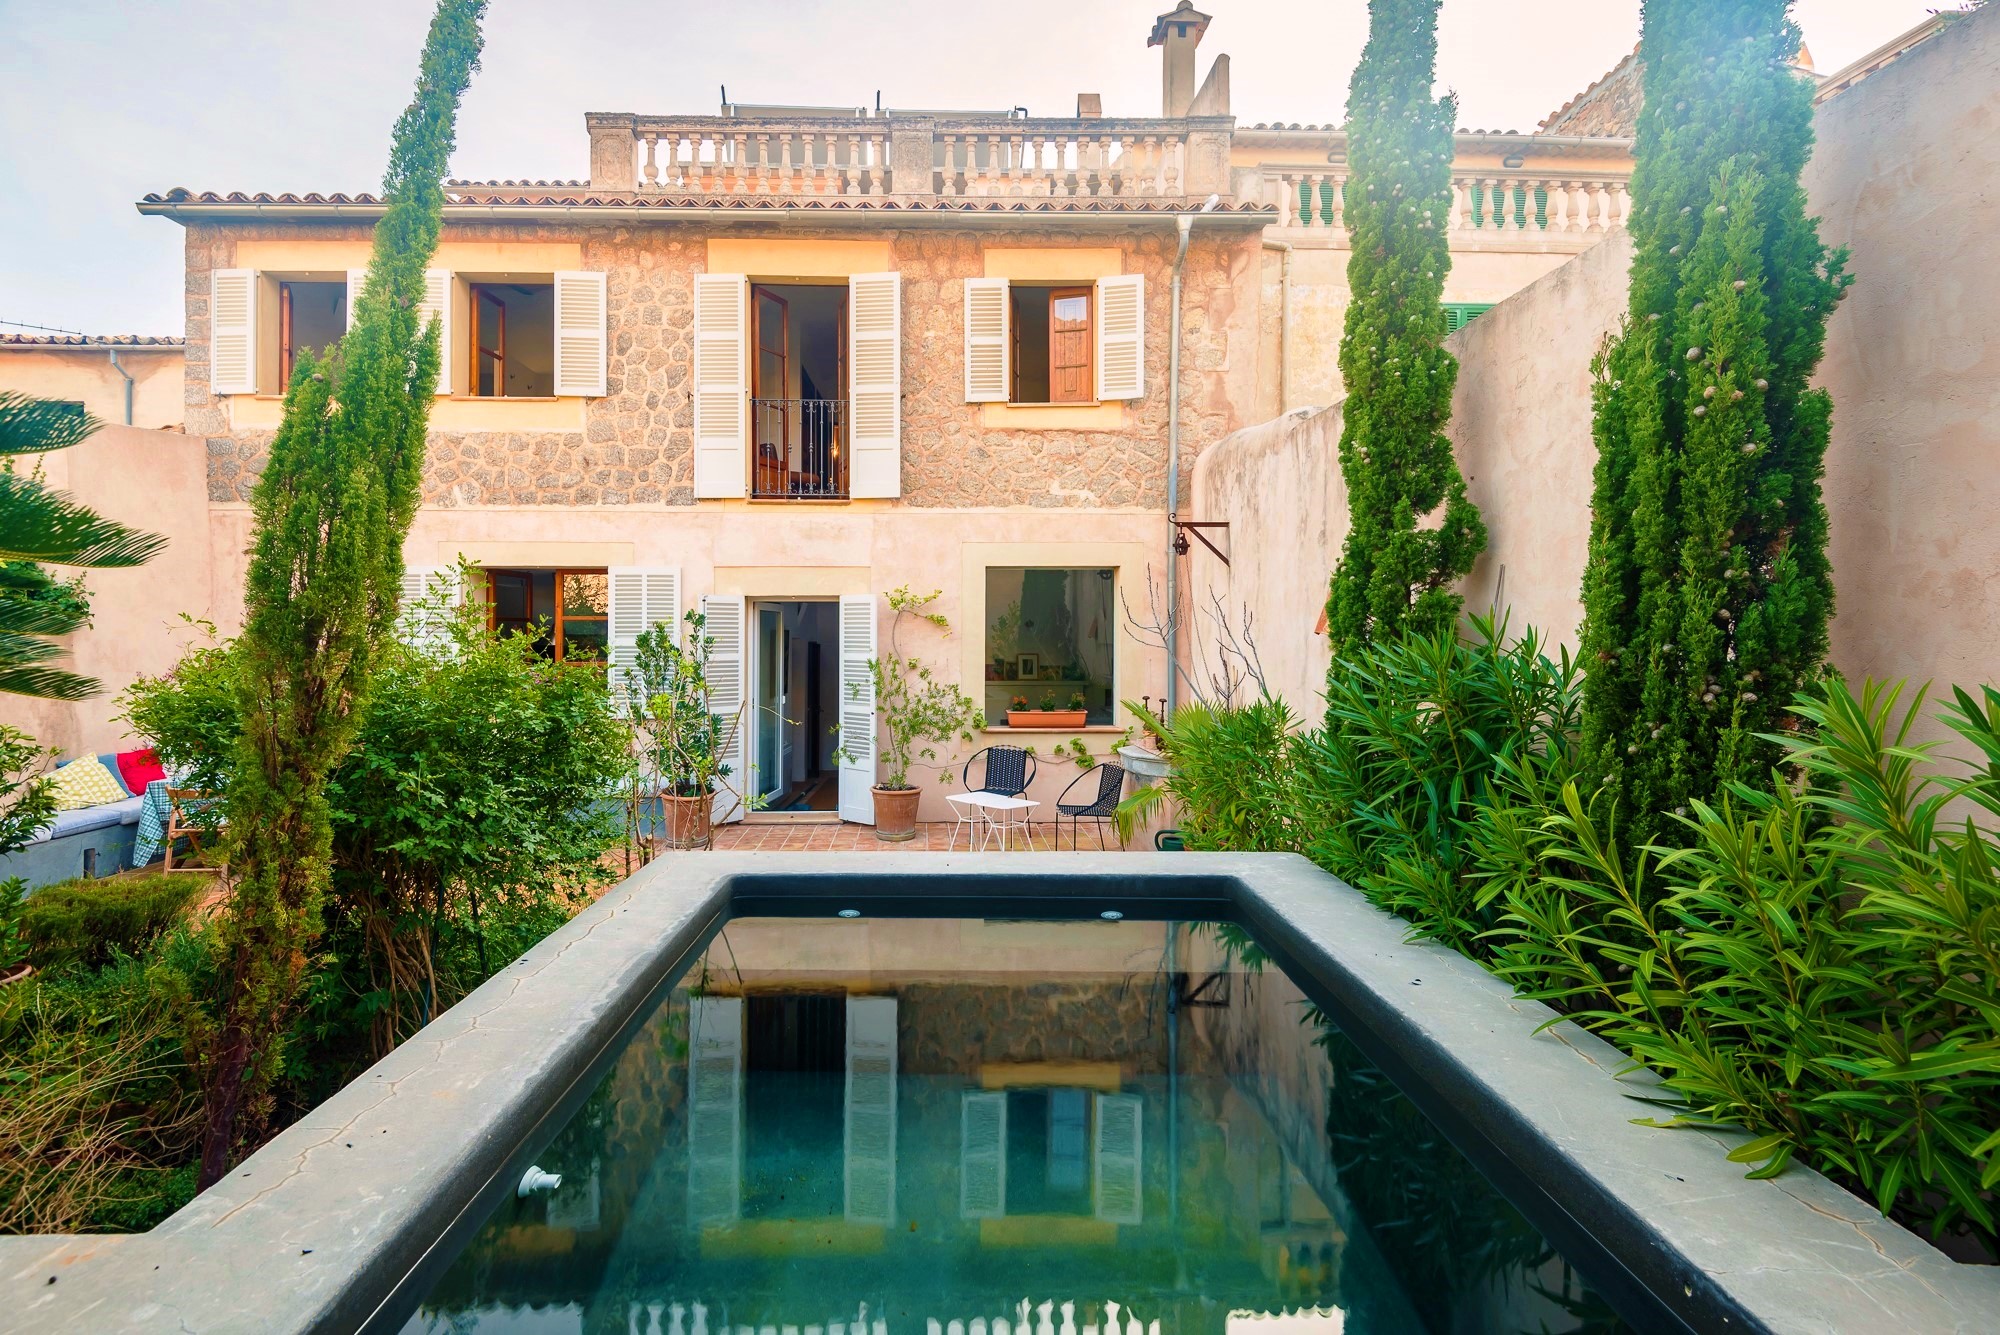 Casa Valldemossa: luxury holiday villa with pool in Mallorca